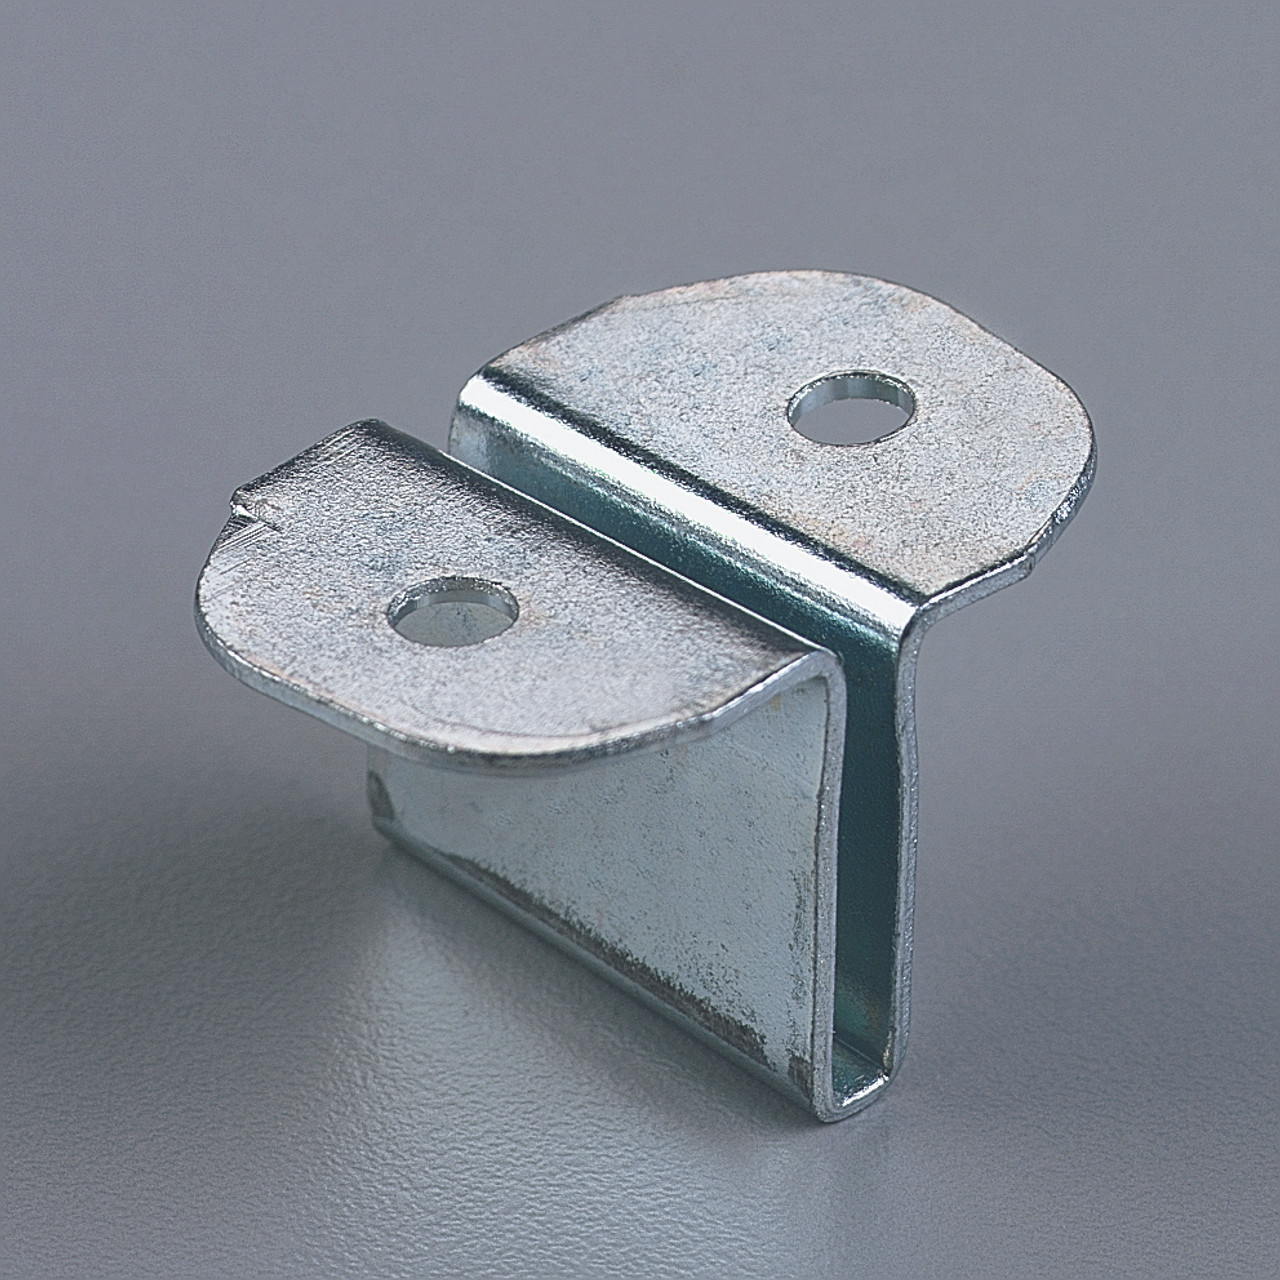 K-V Shelf-fastener (fastens shelf to 180 bracket)